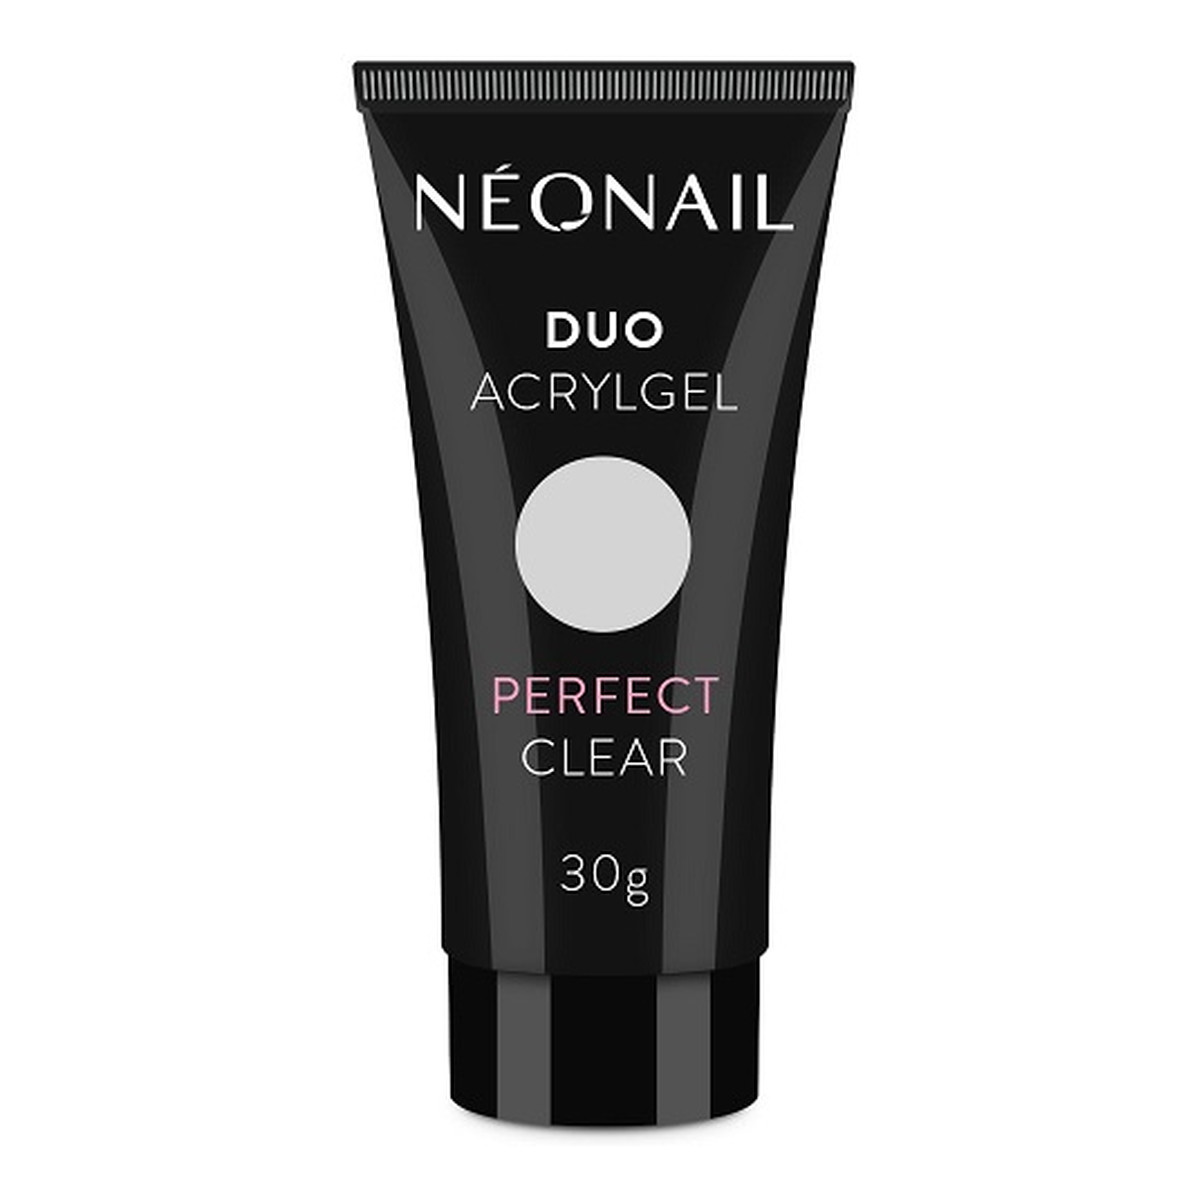 NeoNail Duo Acrylgel Akrylożel do paznokci 30g